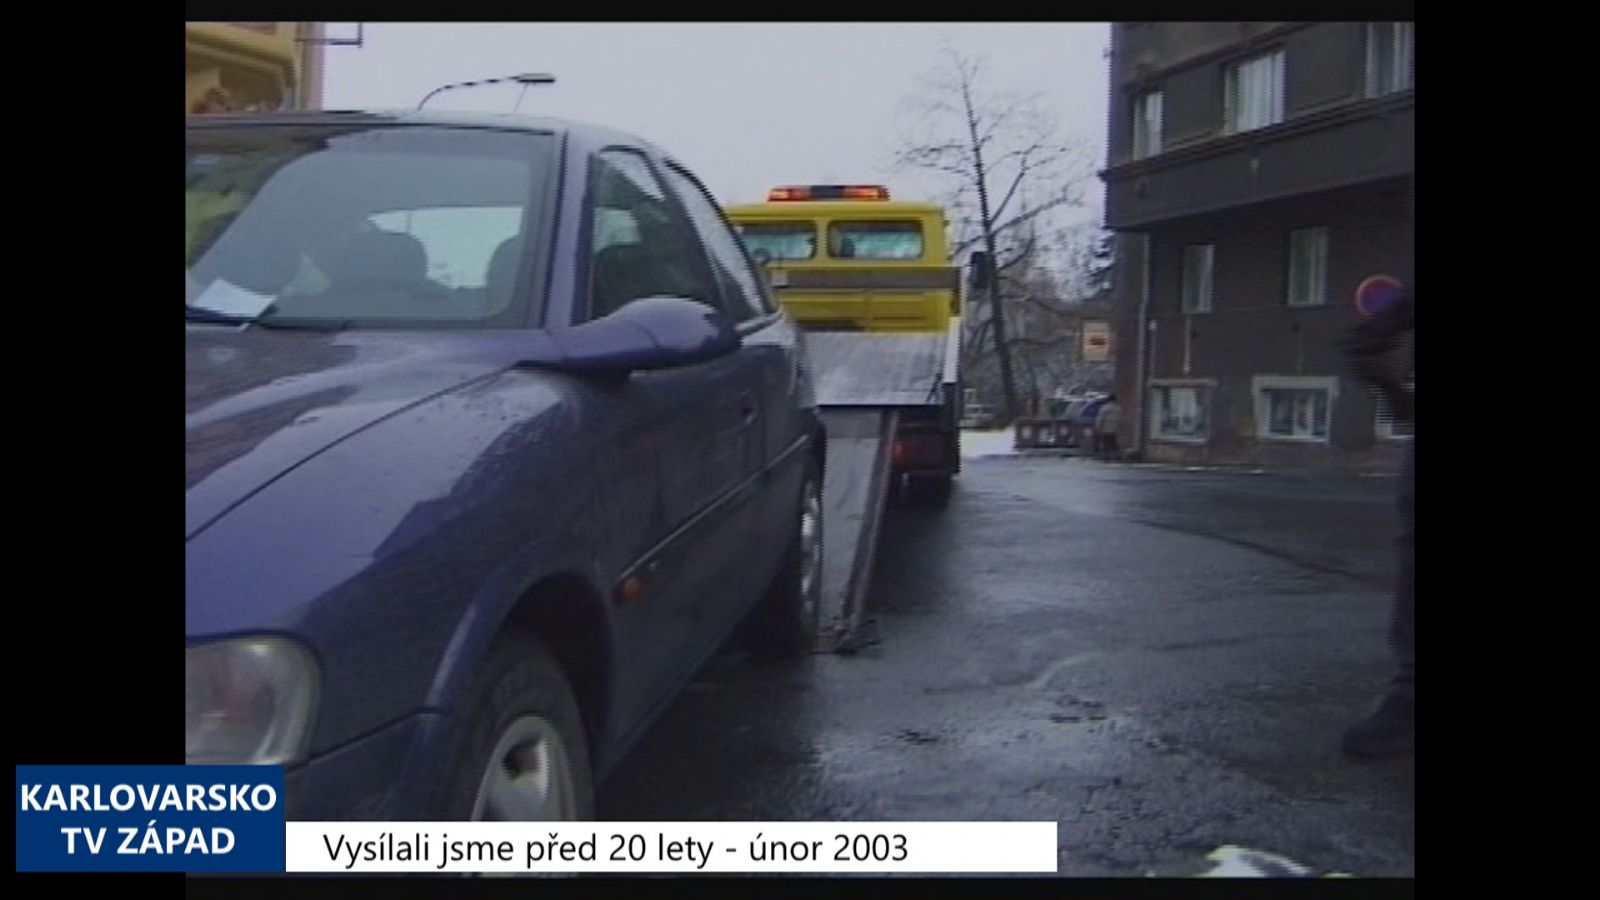 2003 – Cheb: Strážníci začali nařizovat odtahy vozidel (TV Západ)